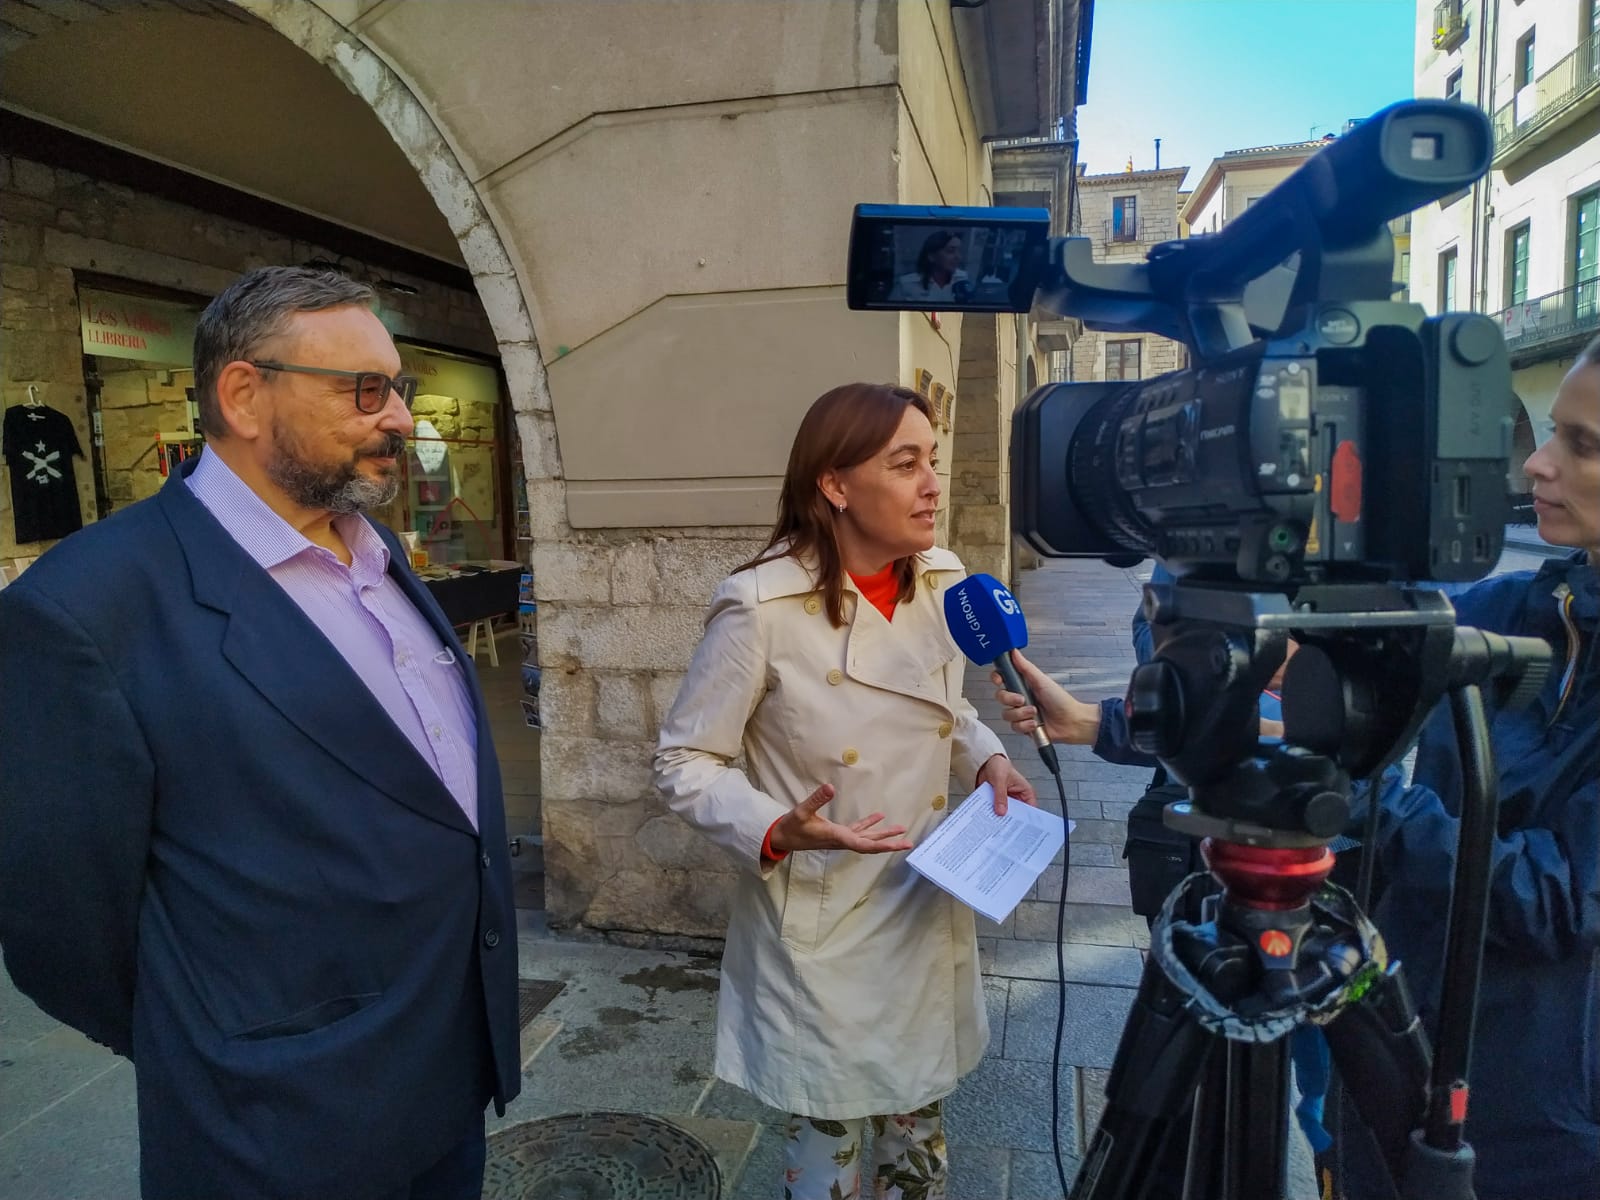 El PSC proposa un pacte de ciutat en seguretat i convivència a Girona